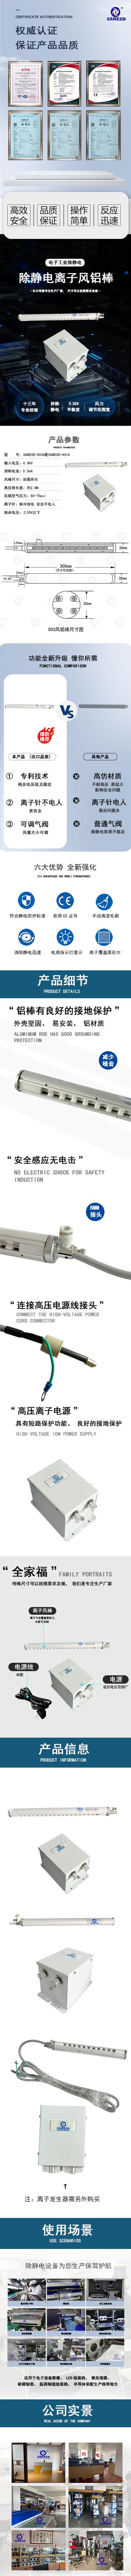 广东闪电除静电设备信号输出ESD-503